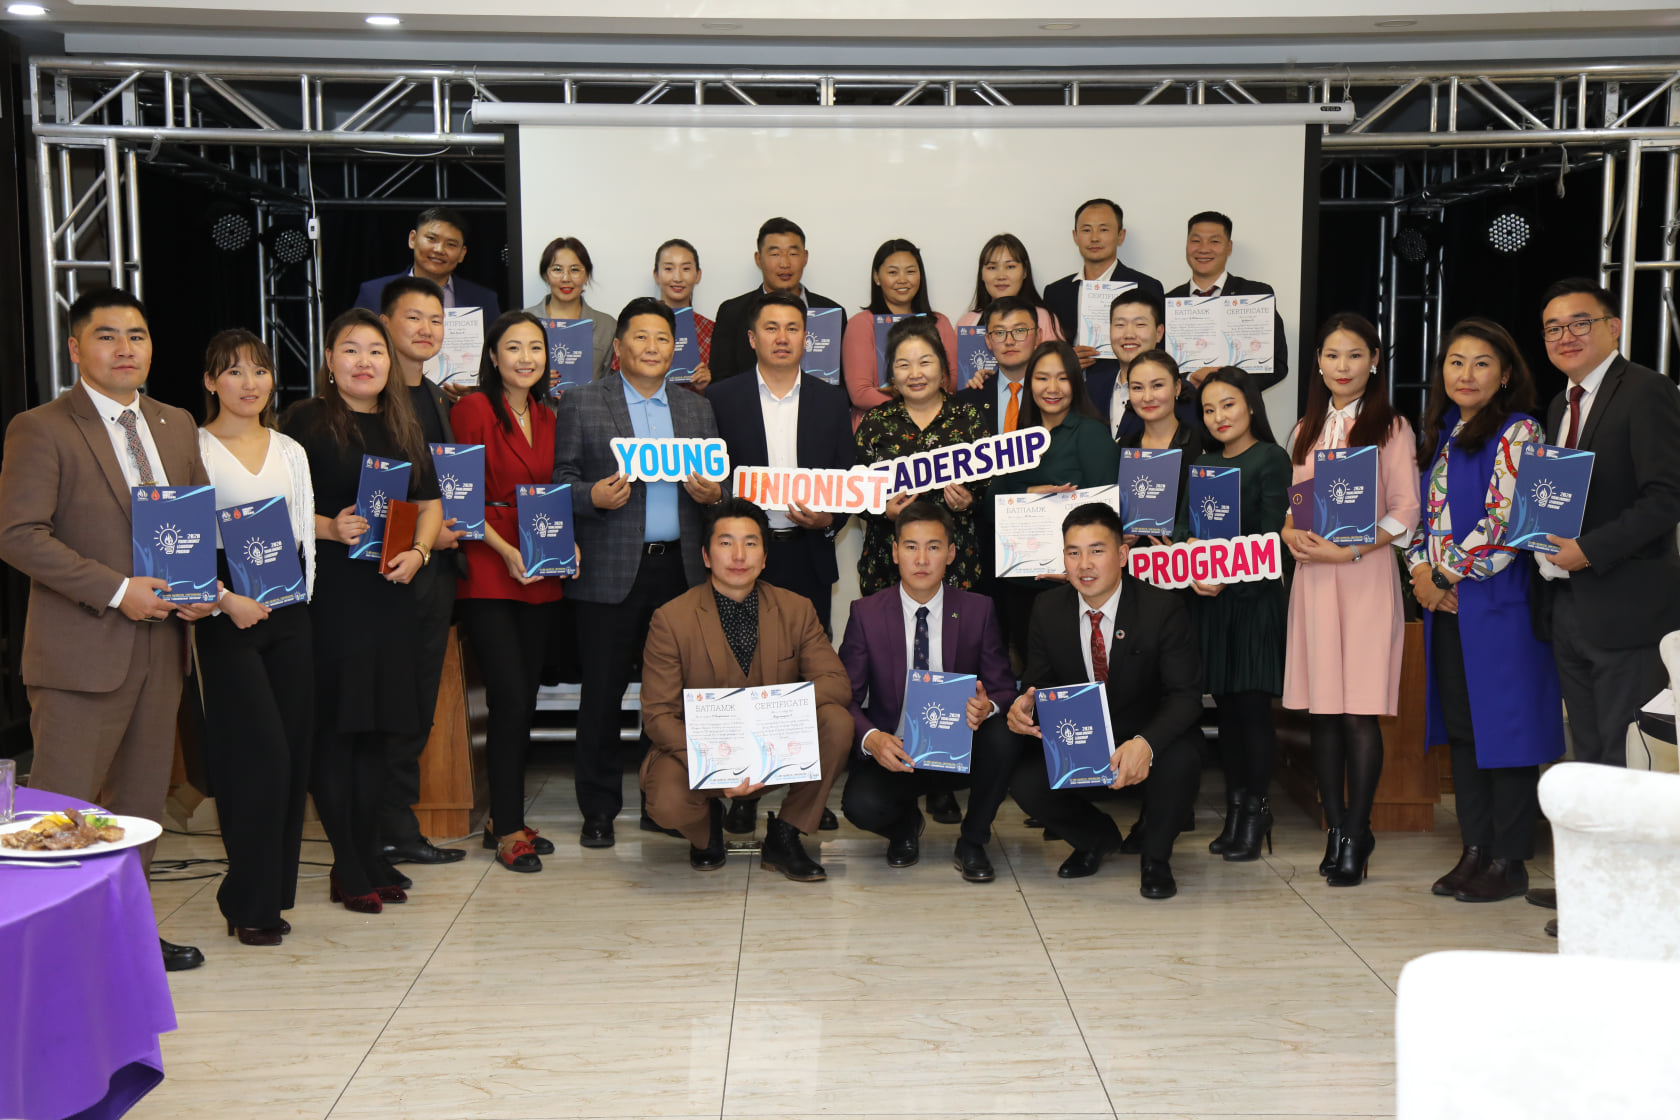 МҮЭХ-ны Залуучуудын хороо, Friedrich-Ebert-Stiftung Mongolia-тай хамтран манлайллын хөтөлбөрийг анх удаагаа хэрэгжүүллээ